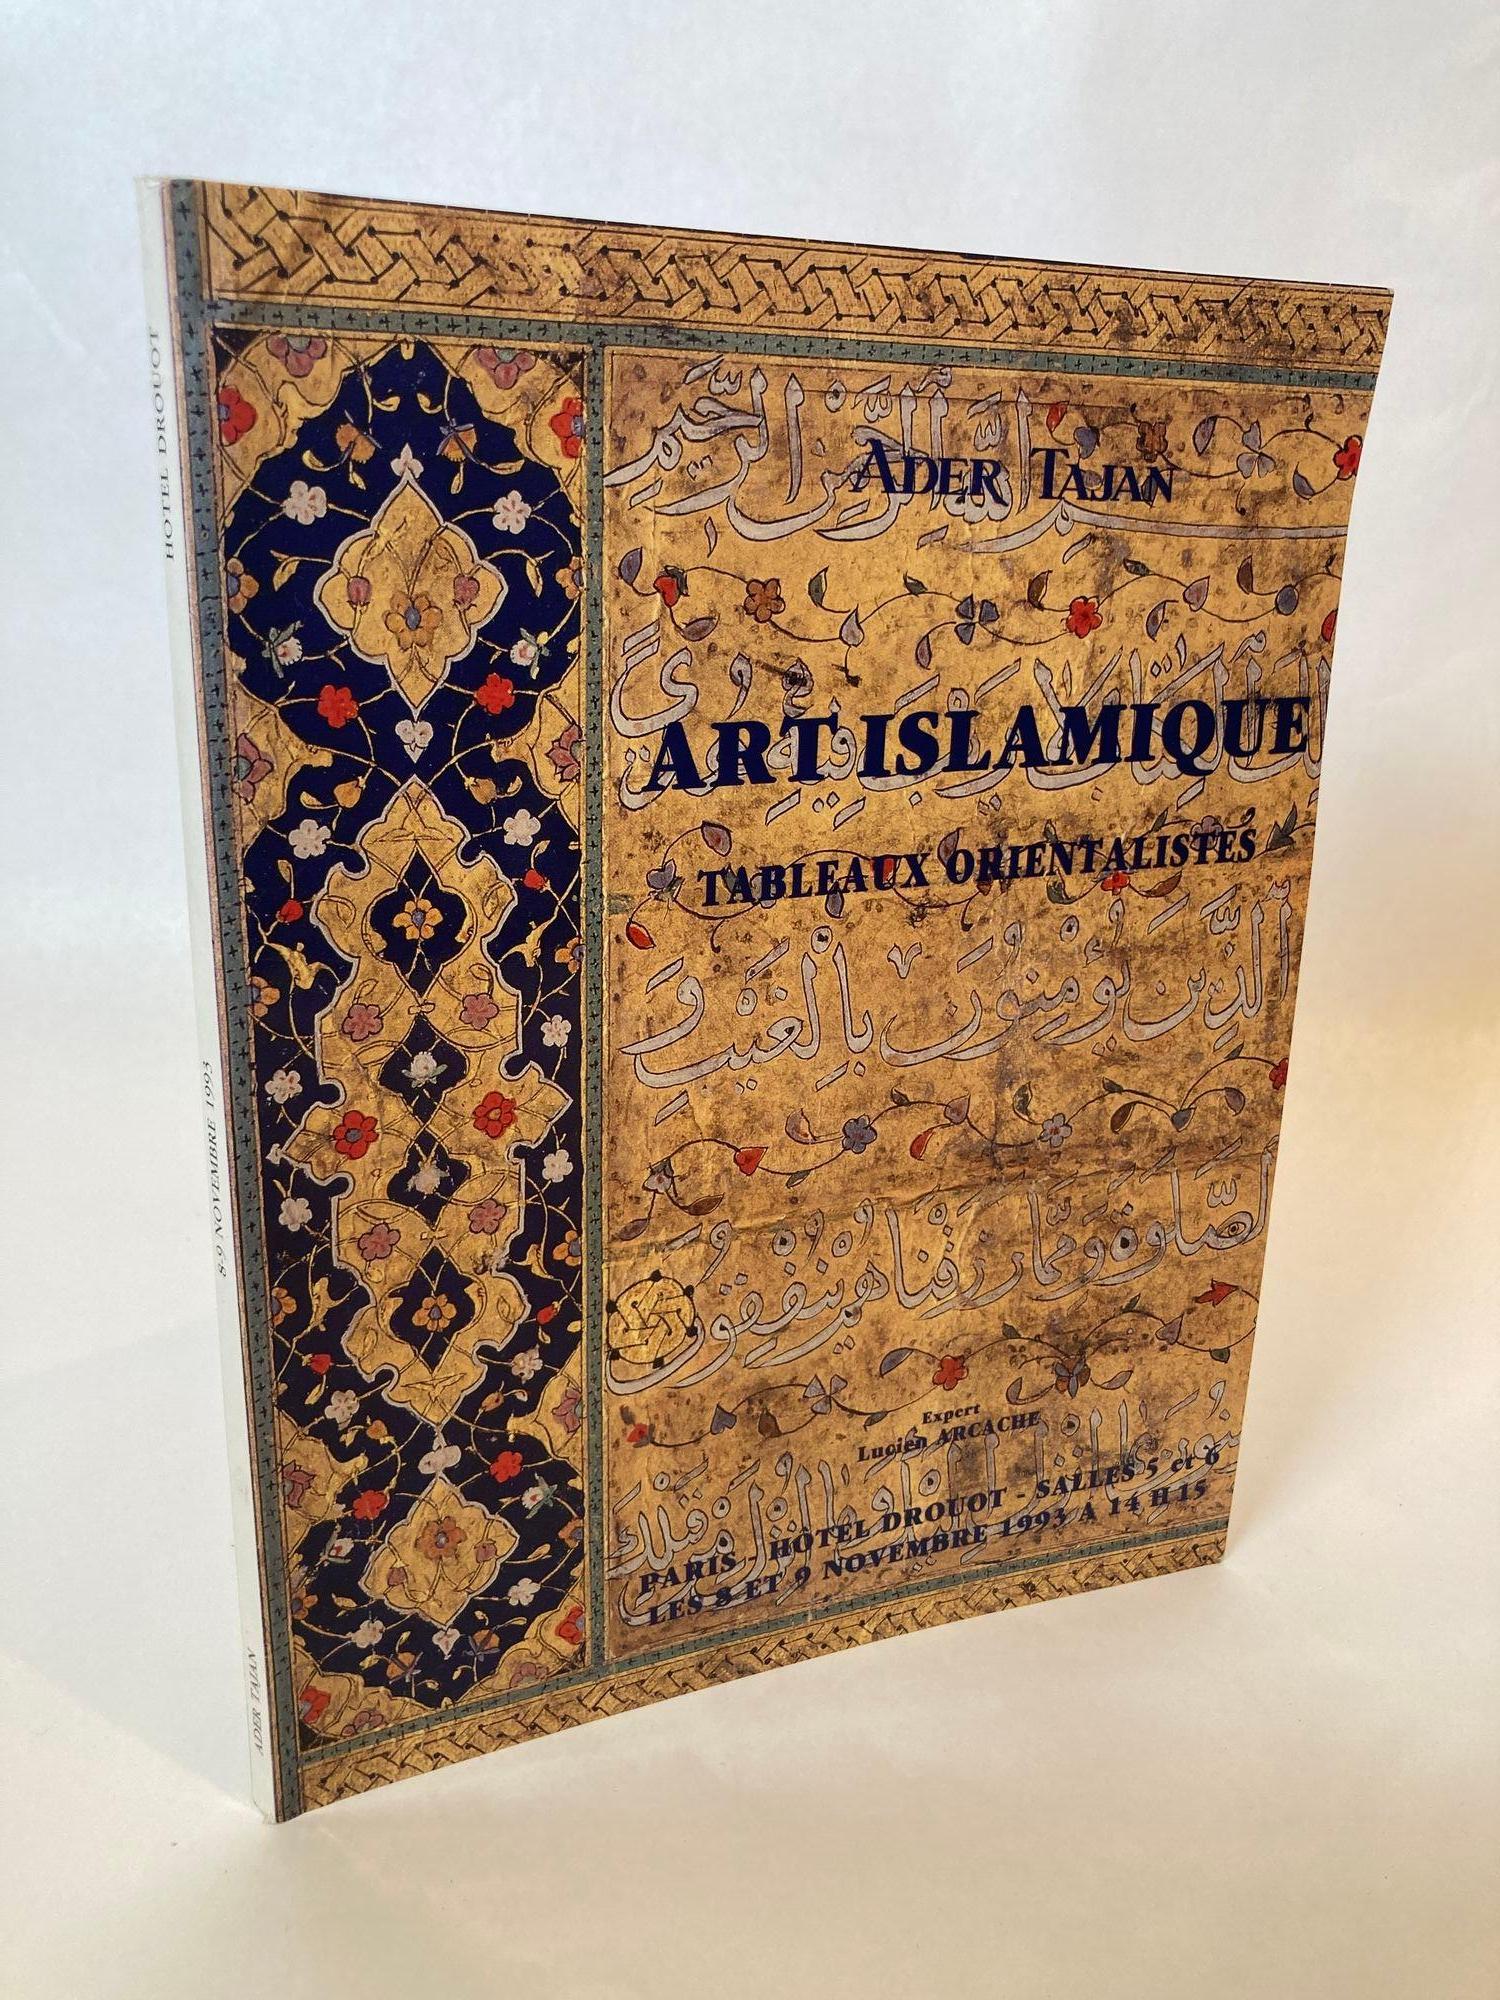 Tajan 1993 Art islamique, peintures orientalistes Catalogue de vente aux enchères Peinture orientaliste et art islamique, Texte en français.
Livre broché à couverture souple sur l'art islamique.
Auteur : A. Tajan.
Dimensions : 8